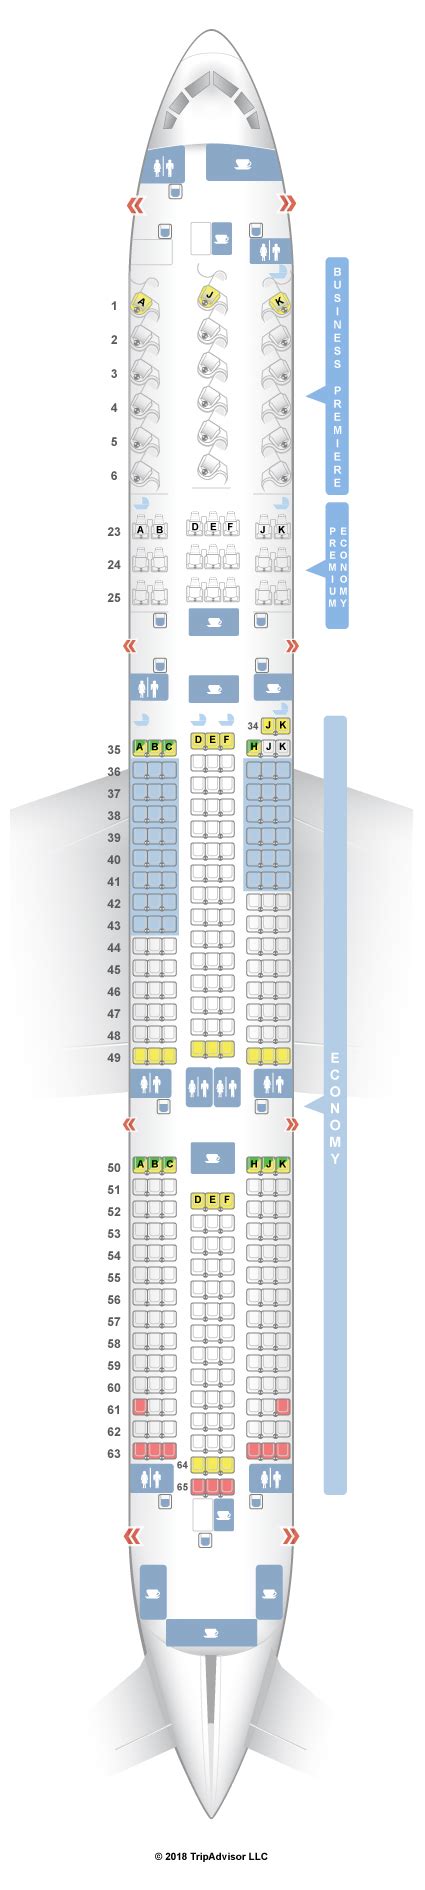 Boeing Seat Map Afp Cv